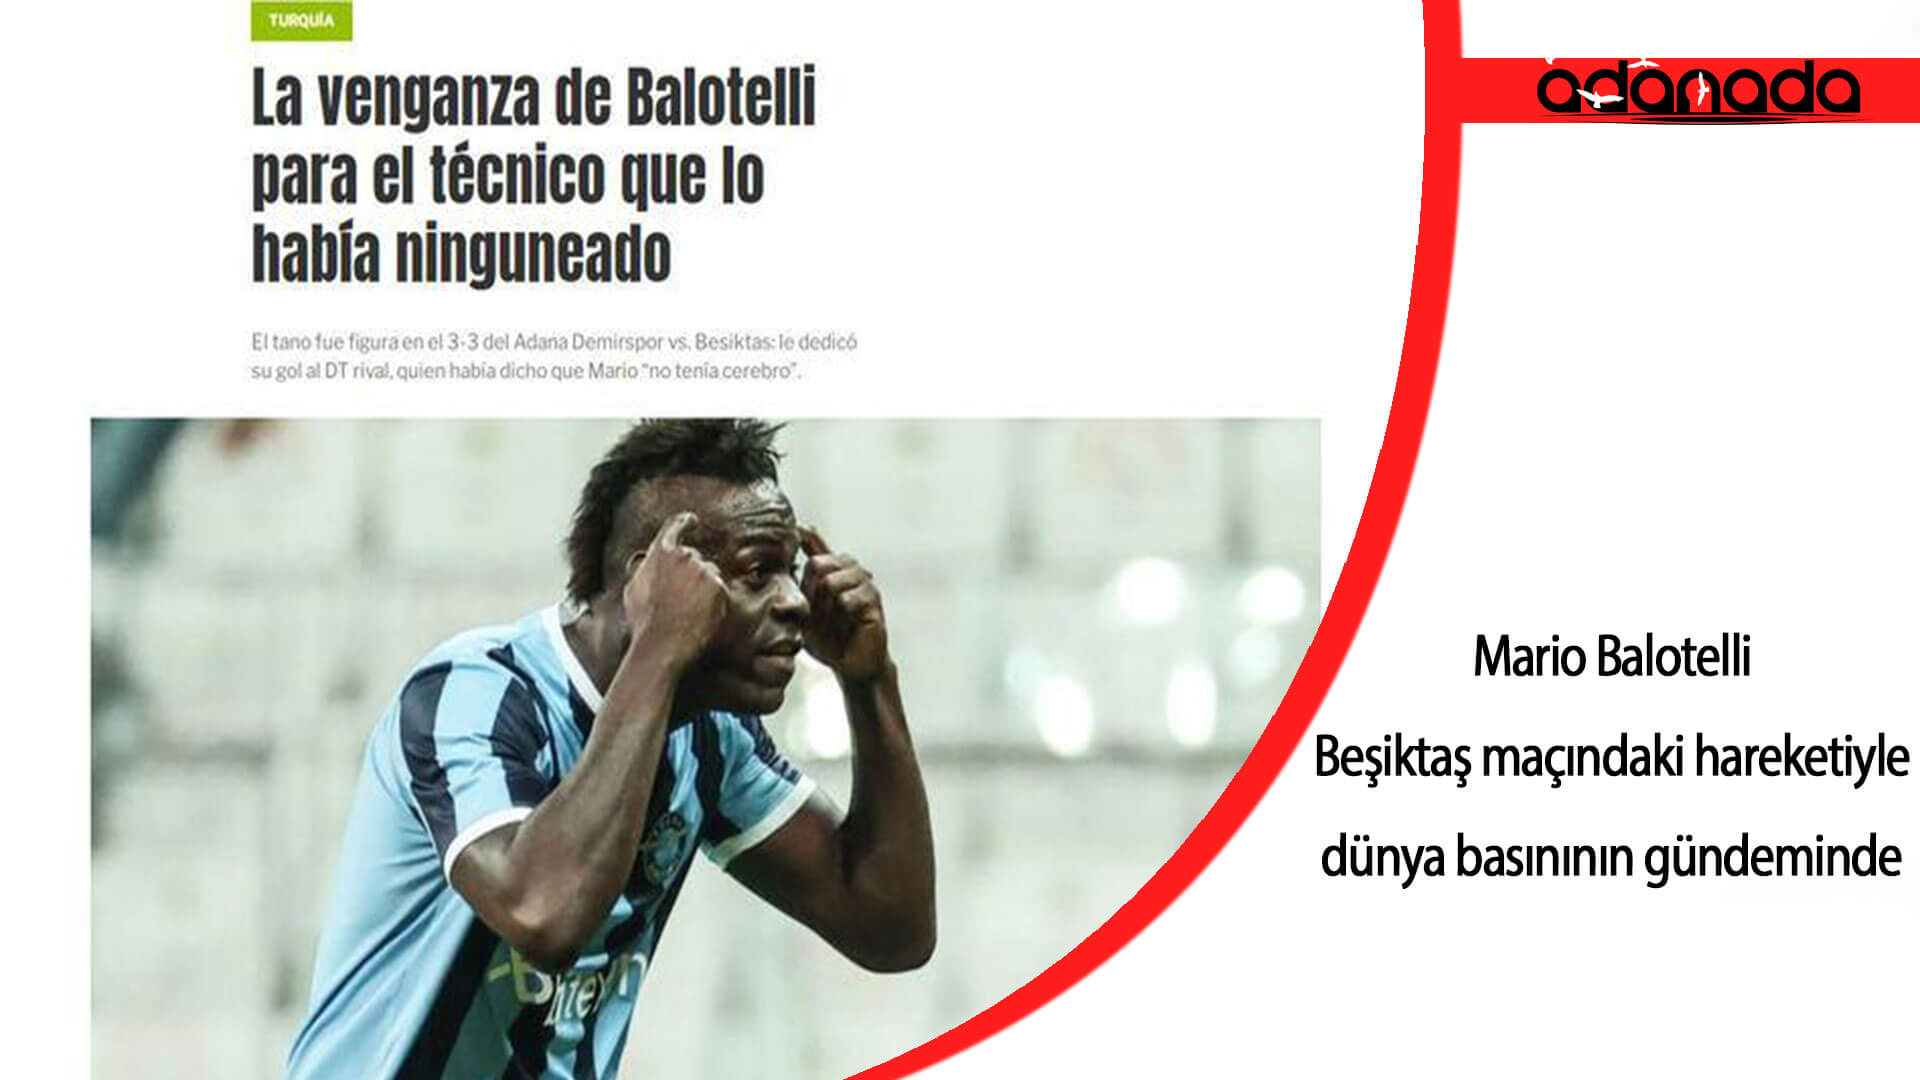 Balotelli, Beşiktaş maçındaki hareketiyle dünya basınının gündeminde